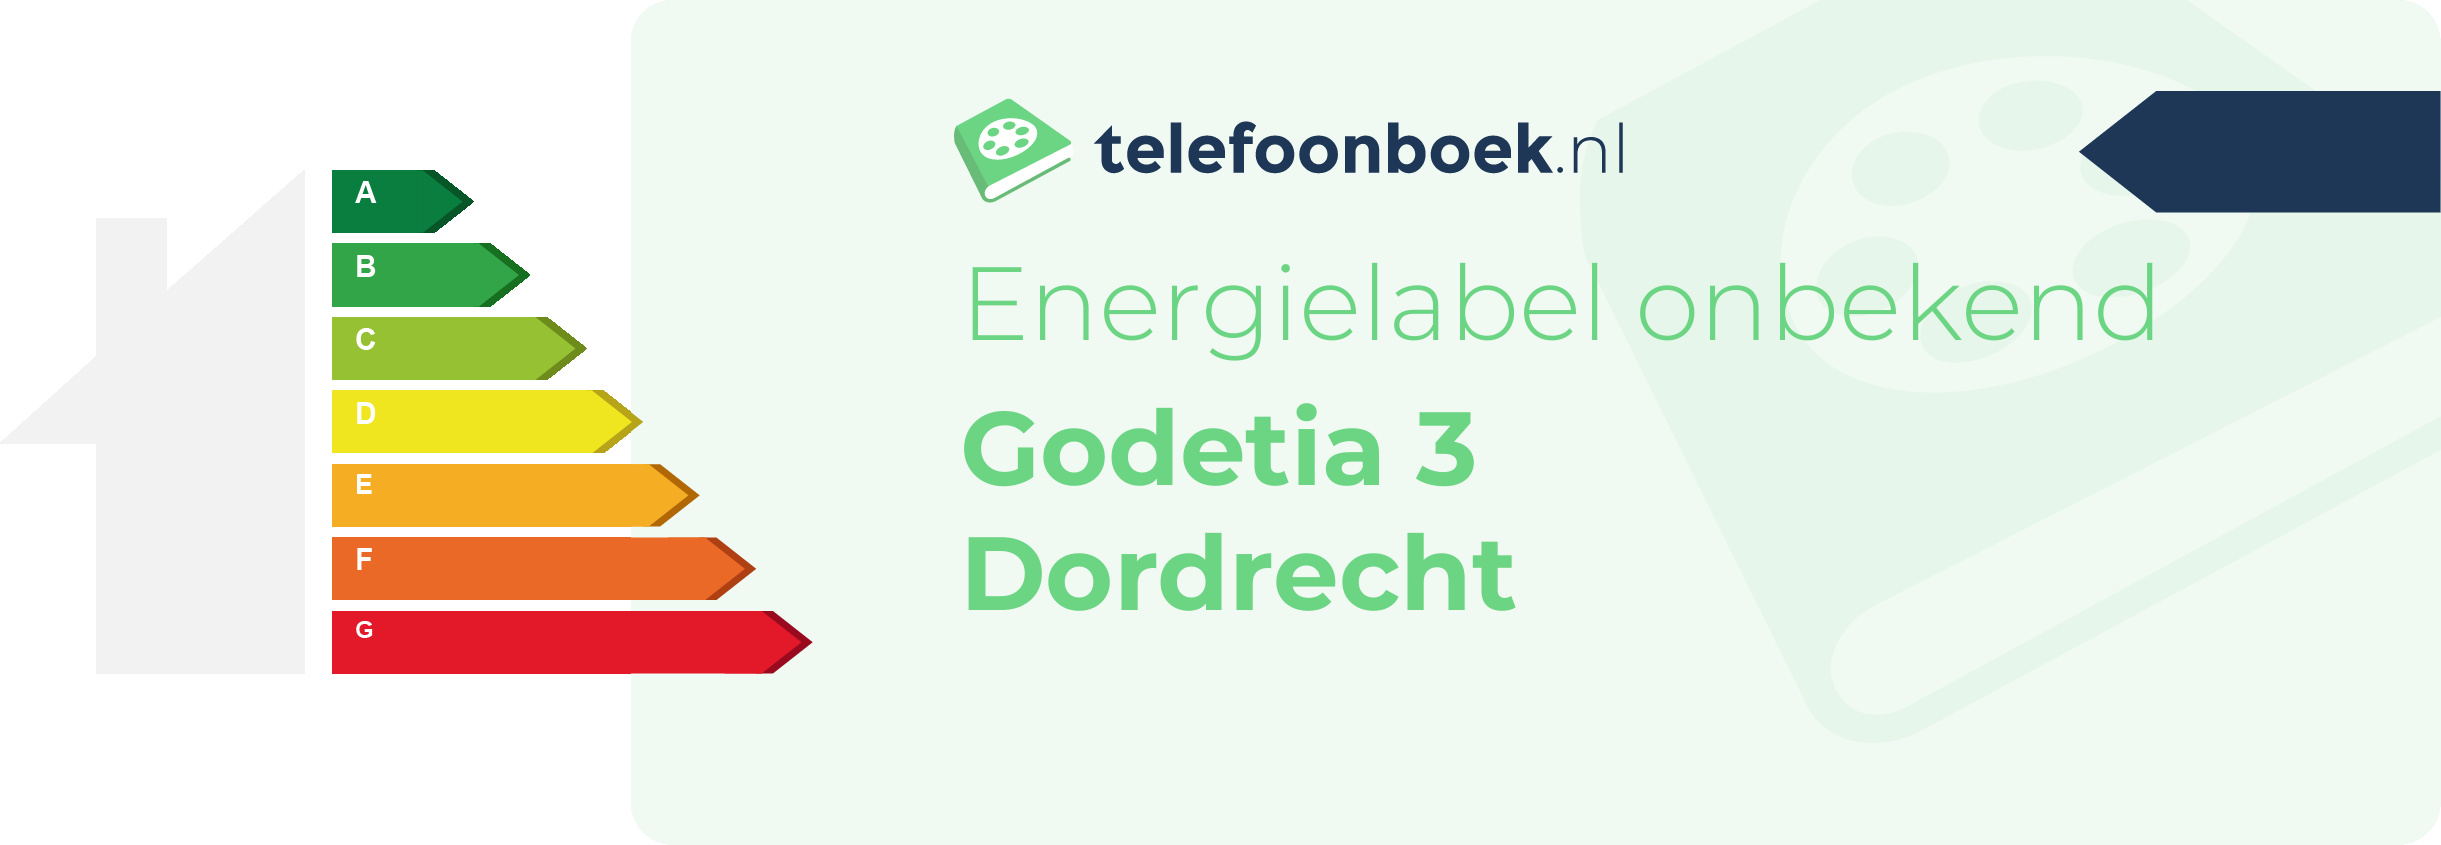 Energielabel Godetia 3 Dordrecht